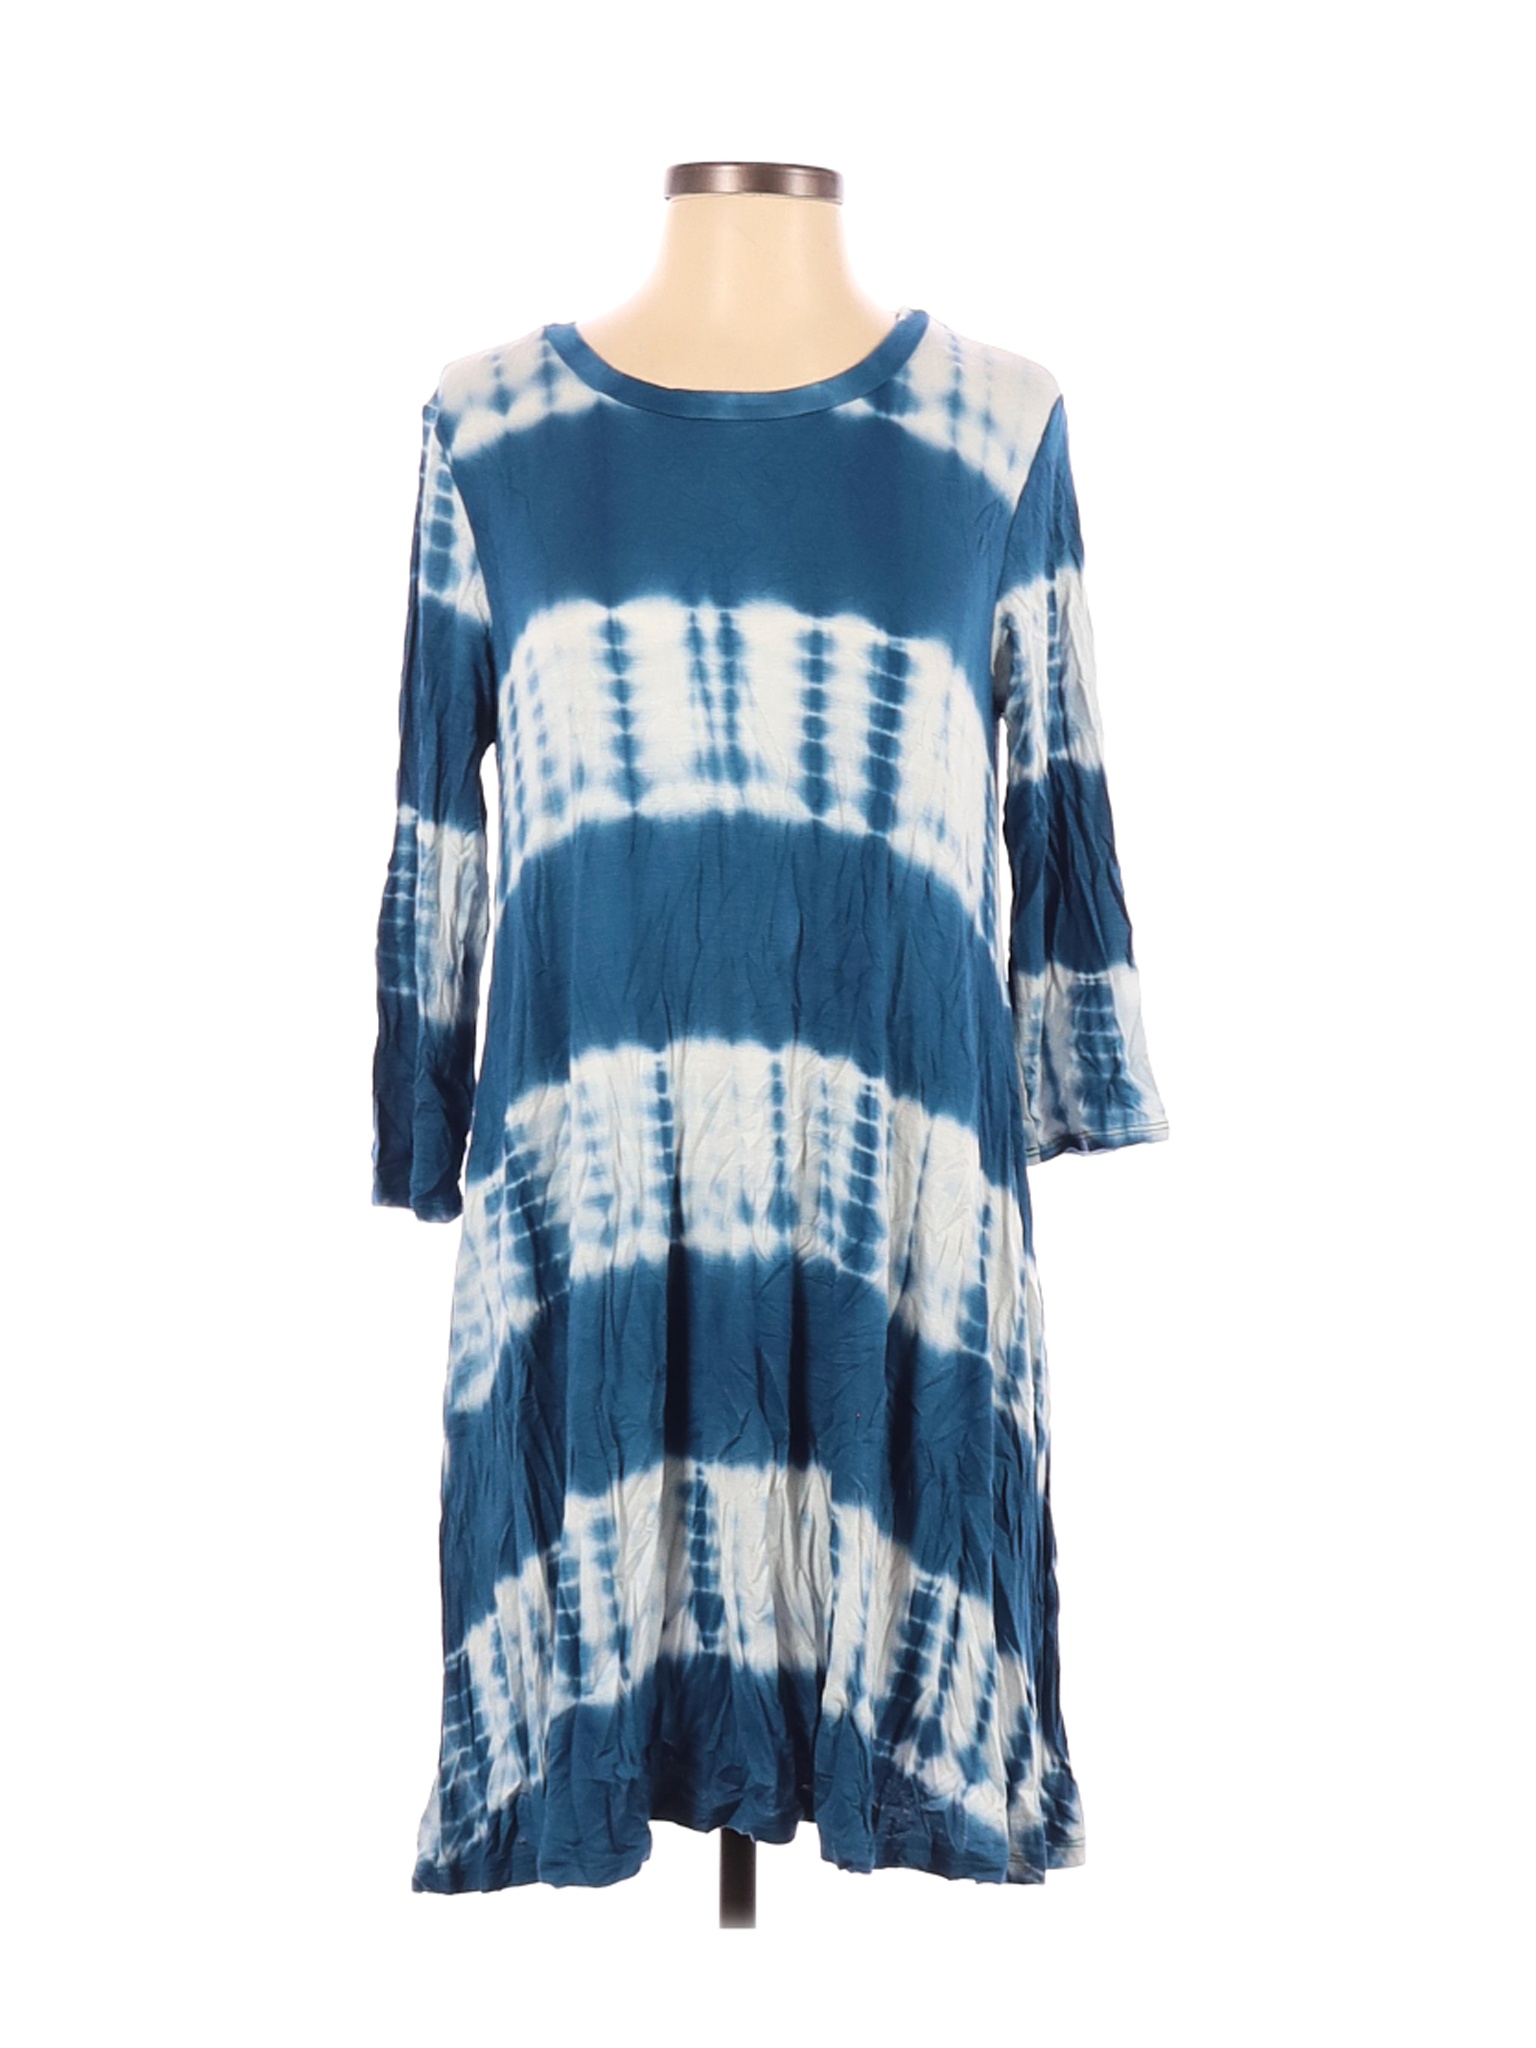 Yee Women Blue Casual Dress S | eBay